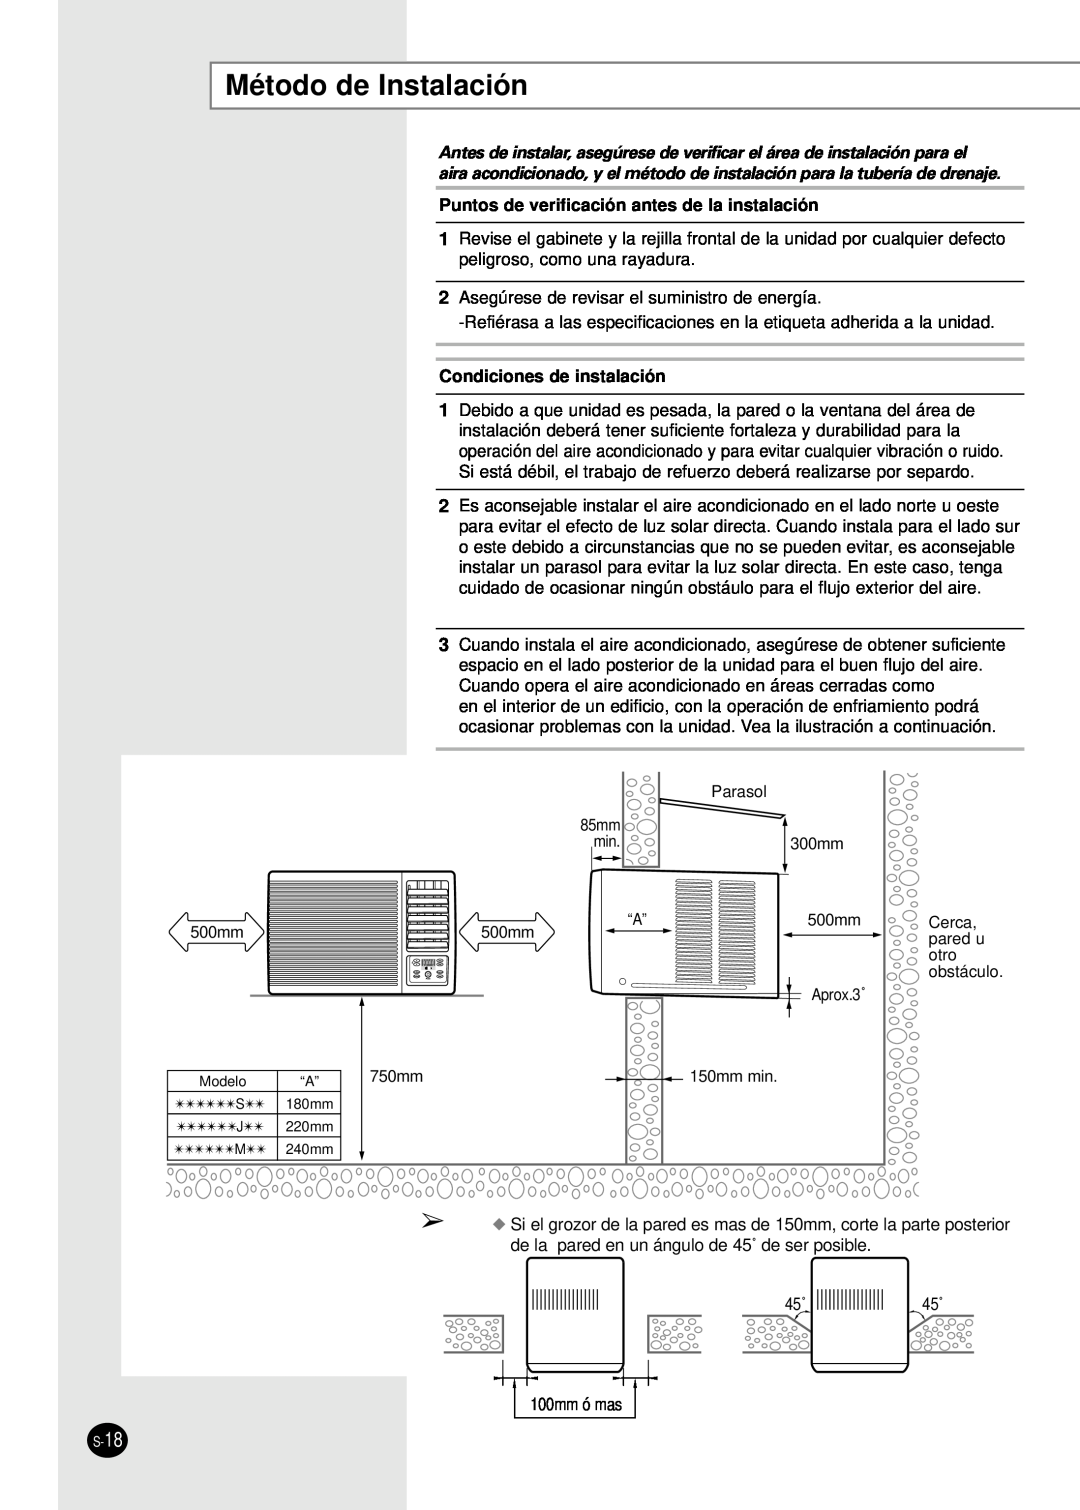 Samsung AW10FAJAA/BA/CA Método de Instalación, Puntos de verificación antes de la instalación, Condiciones de instalación 